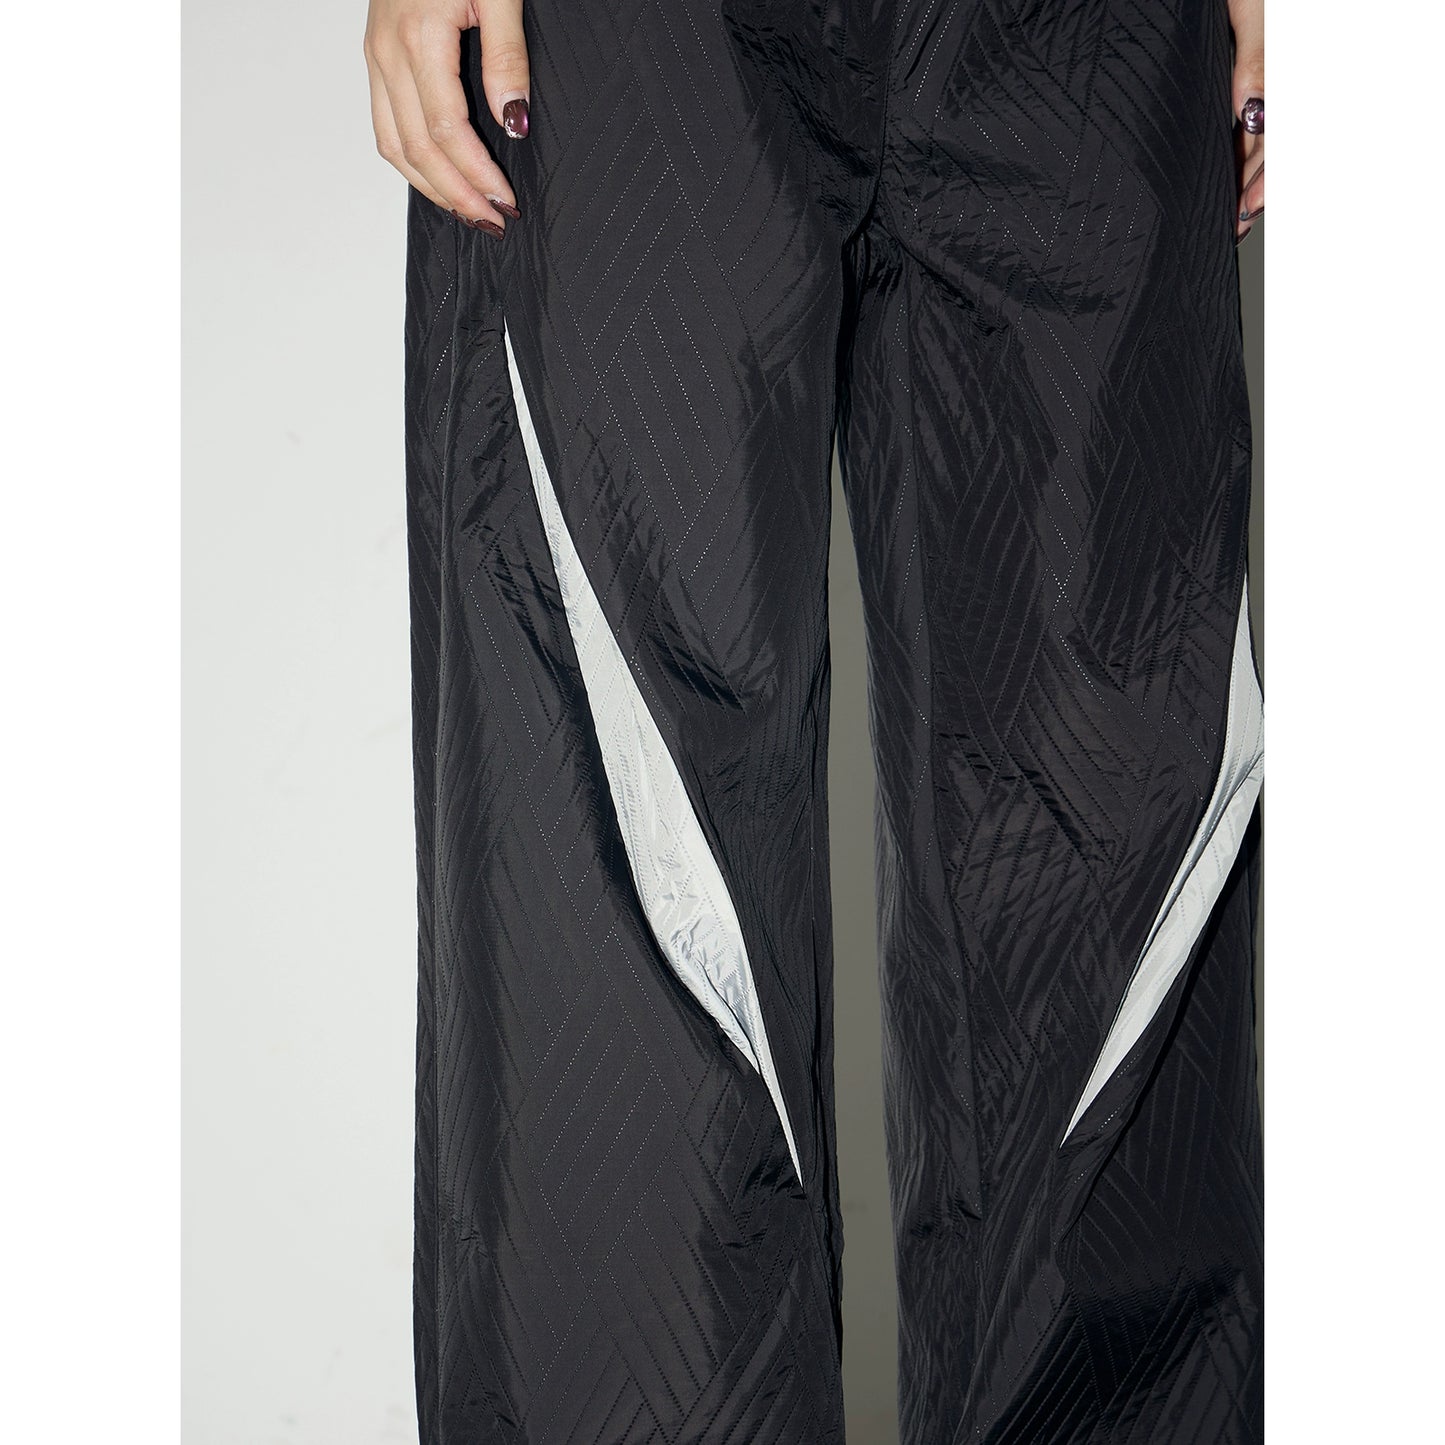 Texture irrégulière - pantalon sportif de segmentation